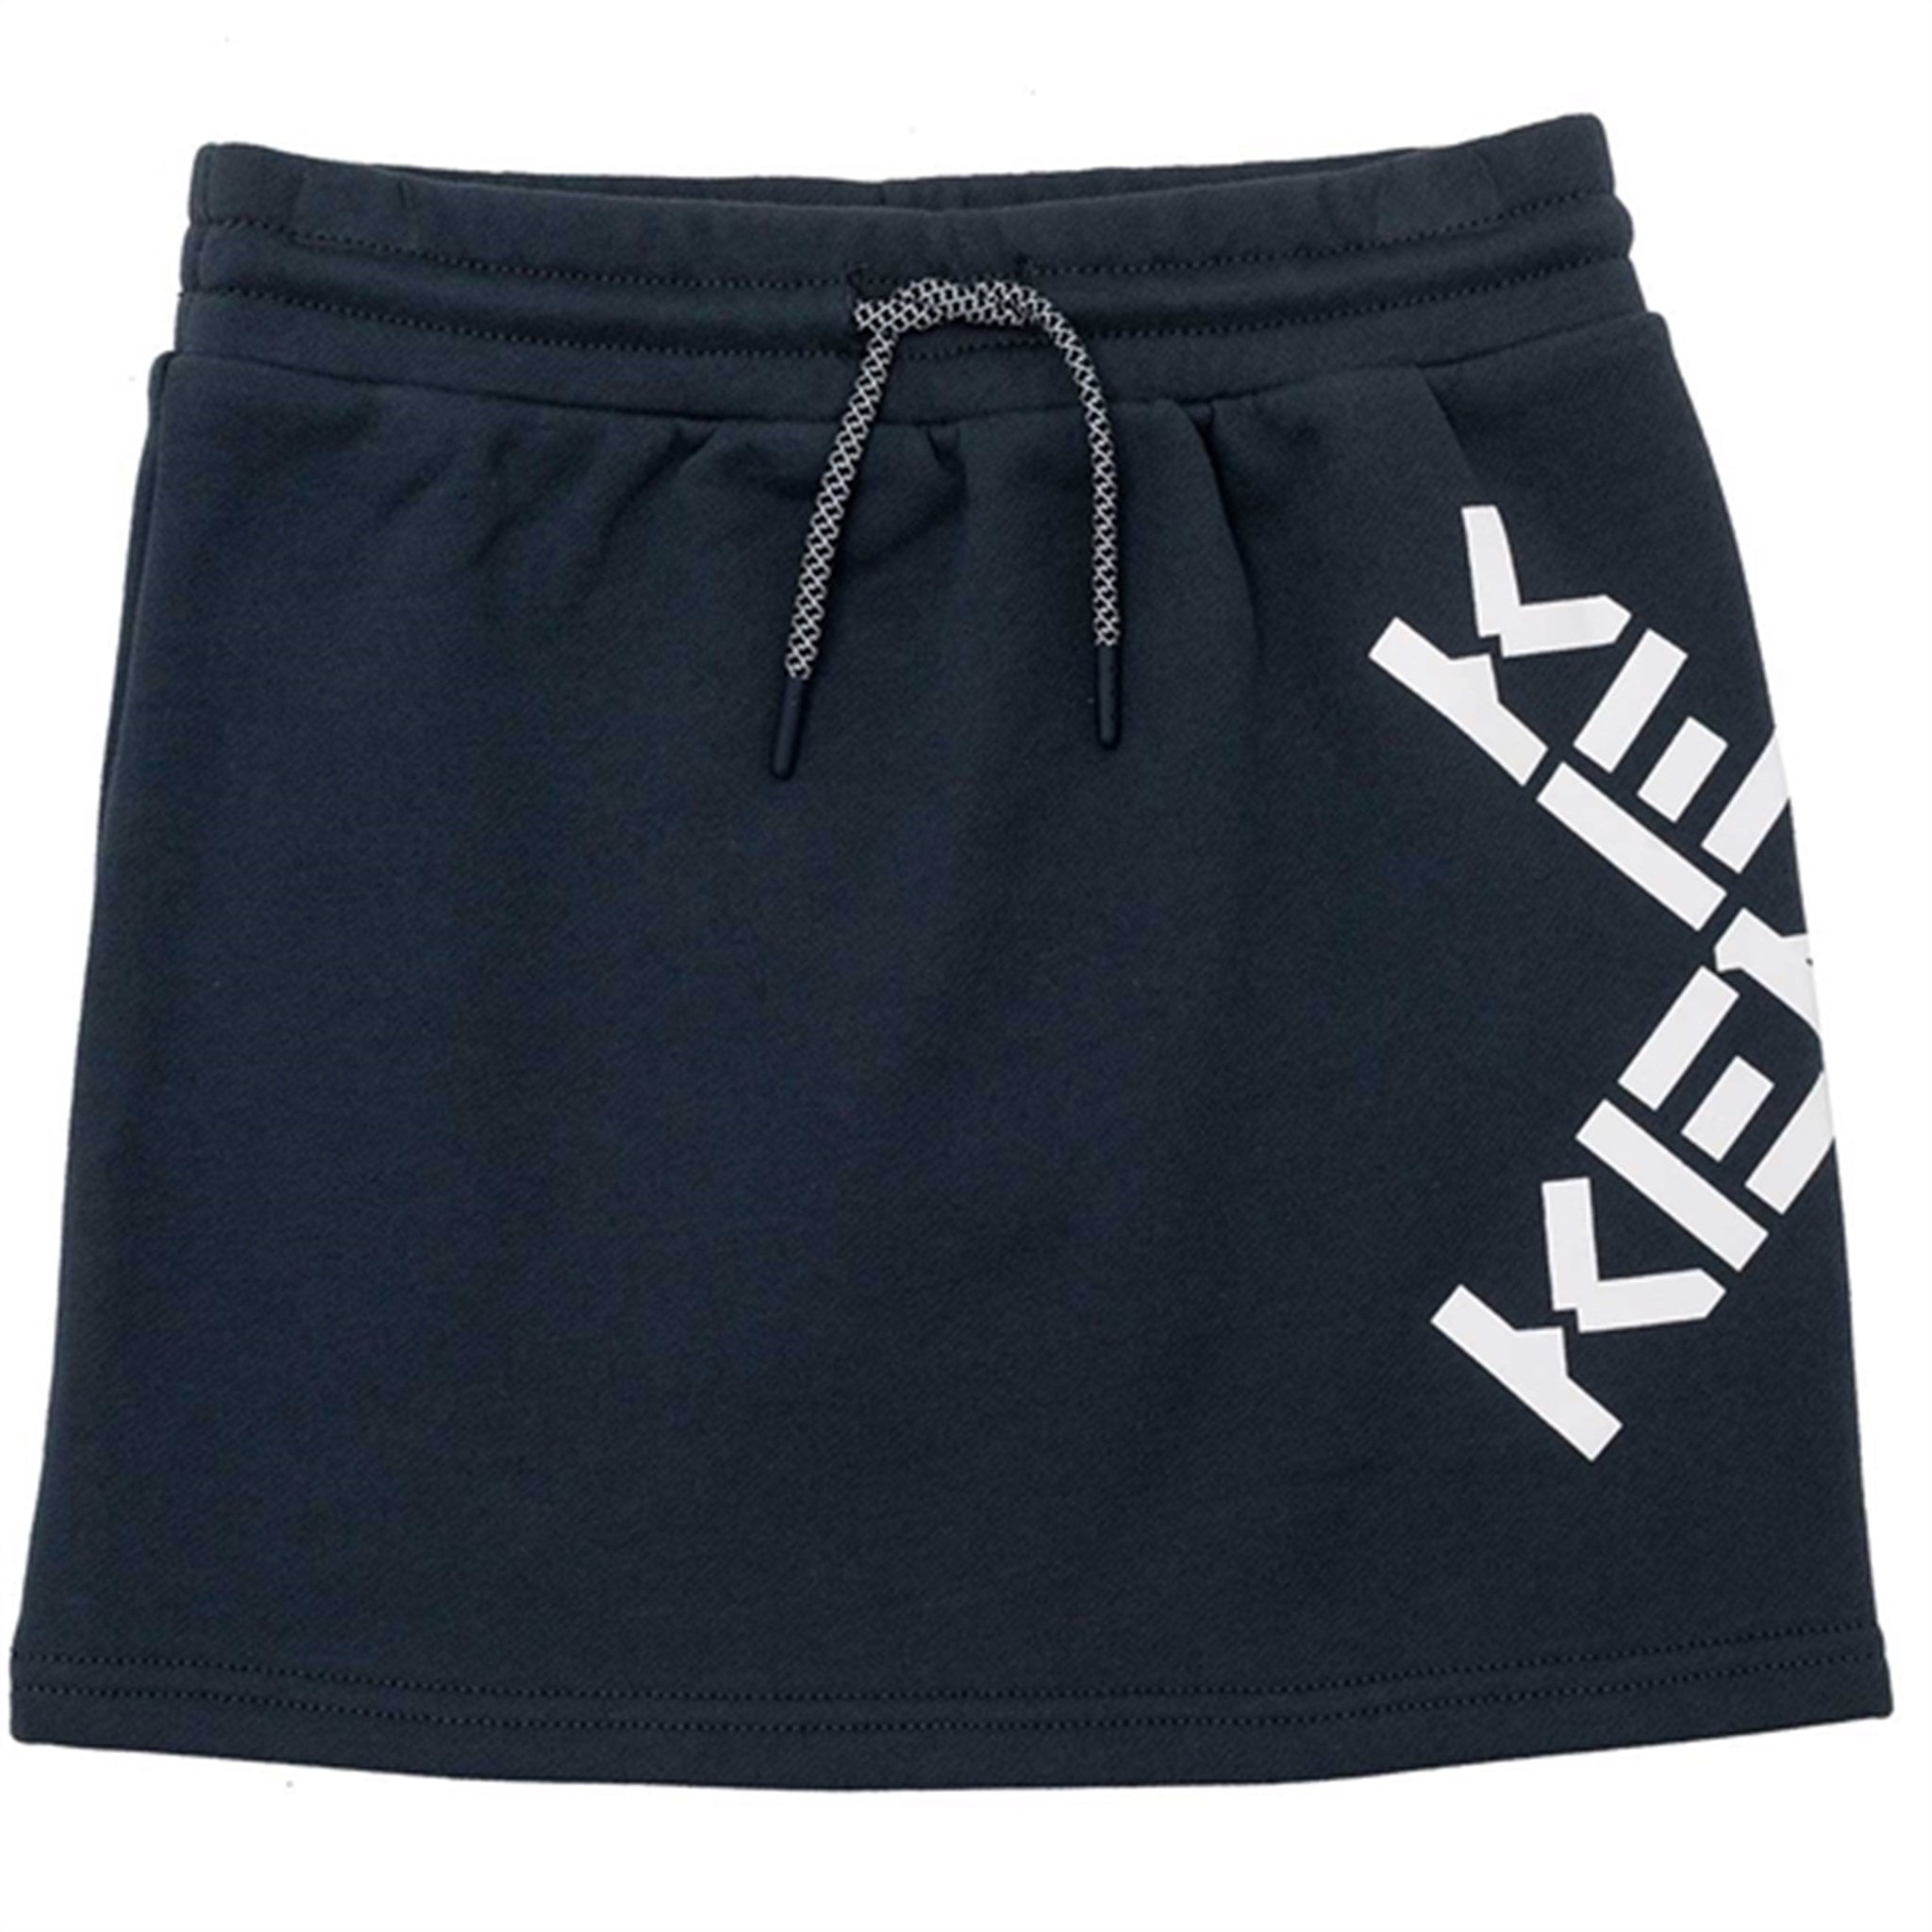 Kenzo Skirt Charcoal Grey